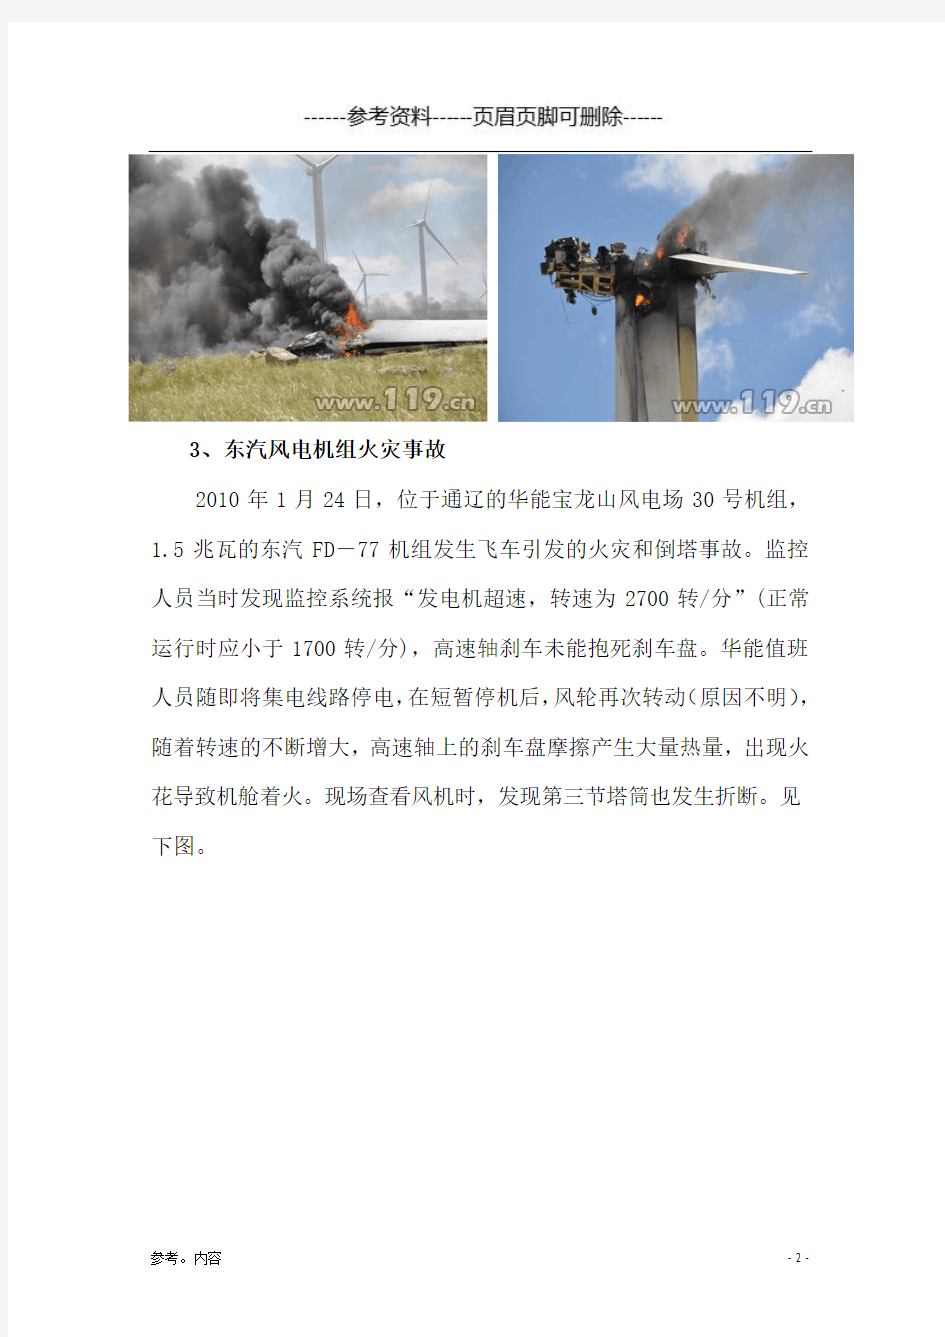 风电行业事故案例(内容参考)